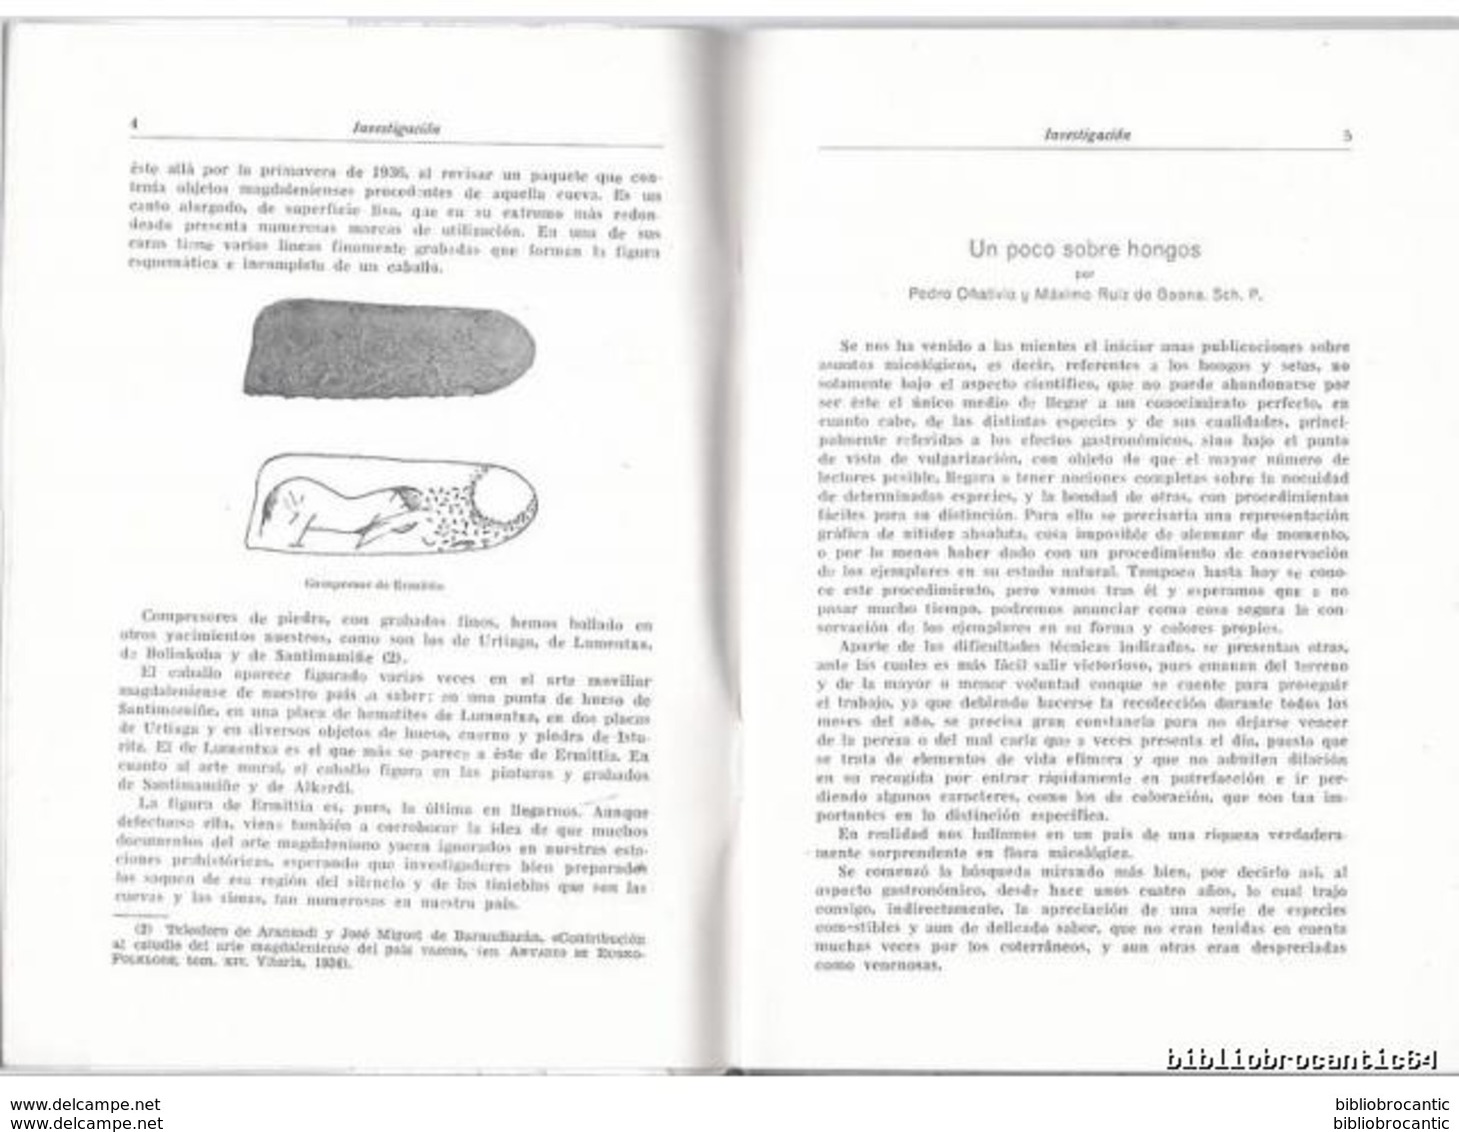 *MUNIBE* (ARCHEOLOGIE < EUSKALLERIA < AITZBITARTE) 1949 N°1 - BOLETIN SOC. VASCONGADA (Livre En Basque) - Culture